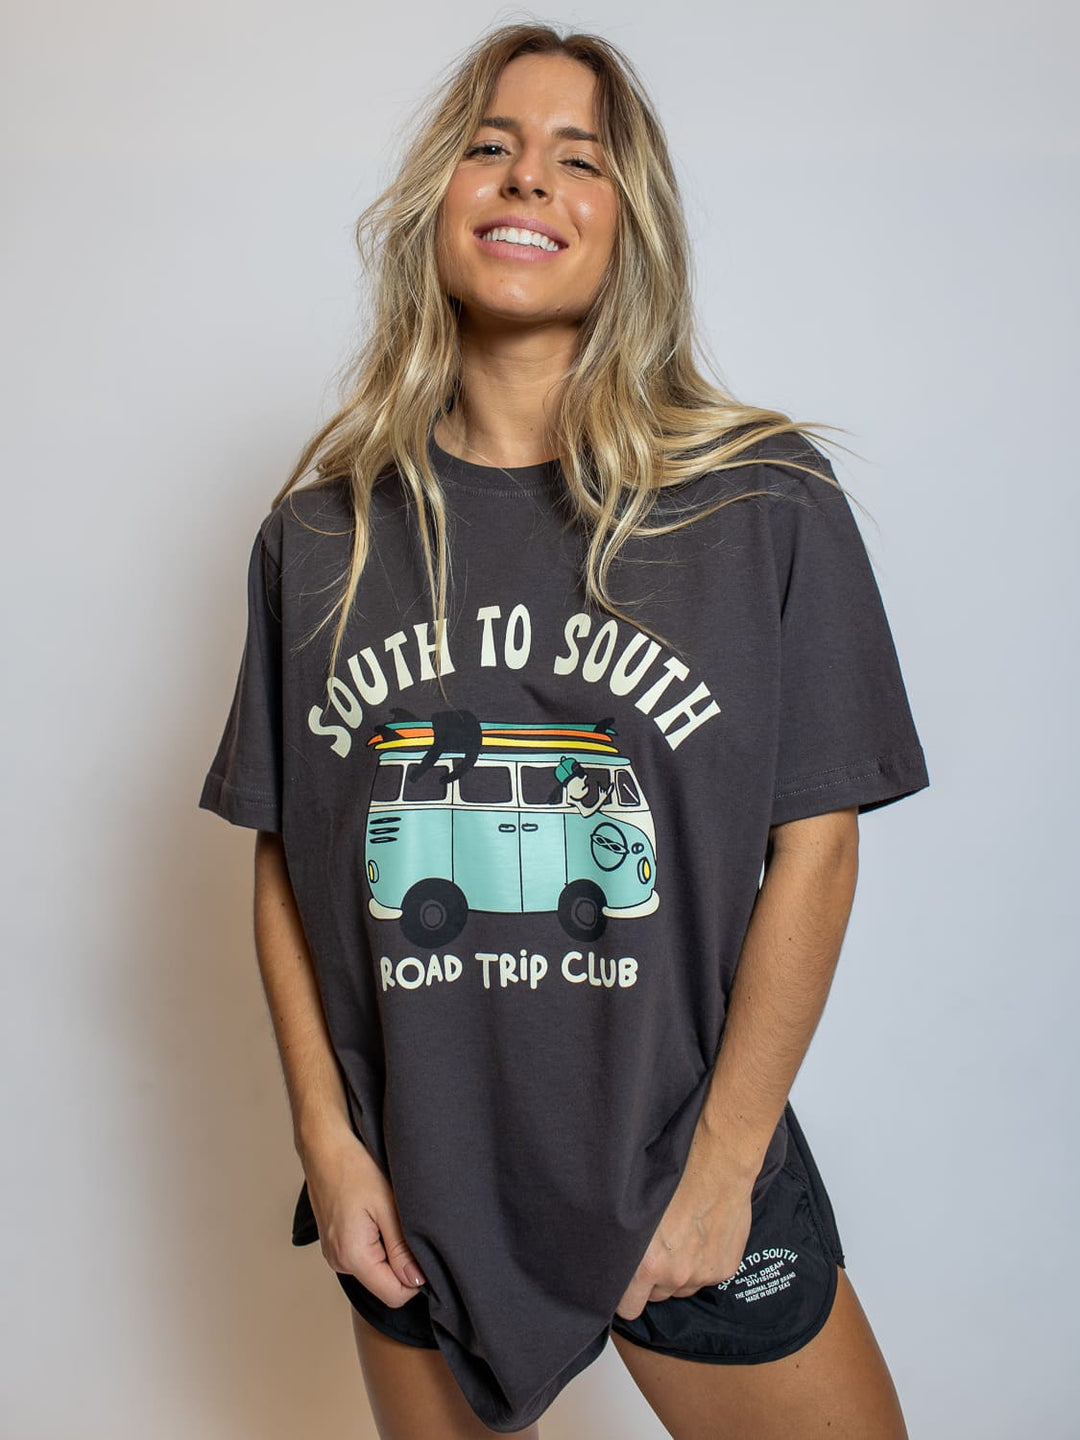 Camiseta "Road Trip Club" Feminino